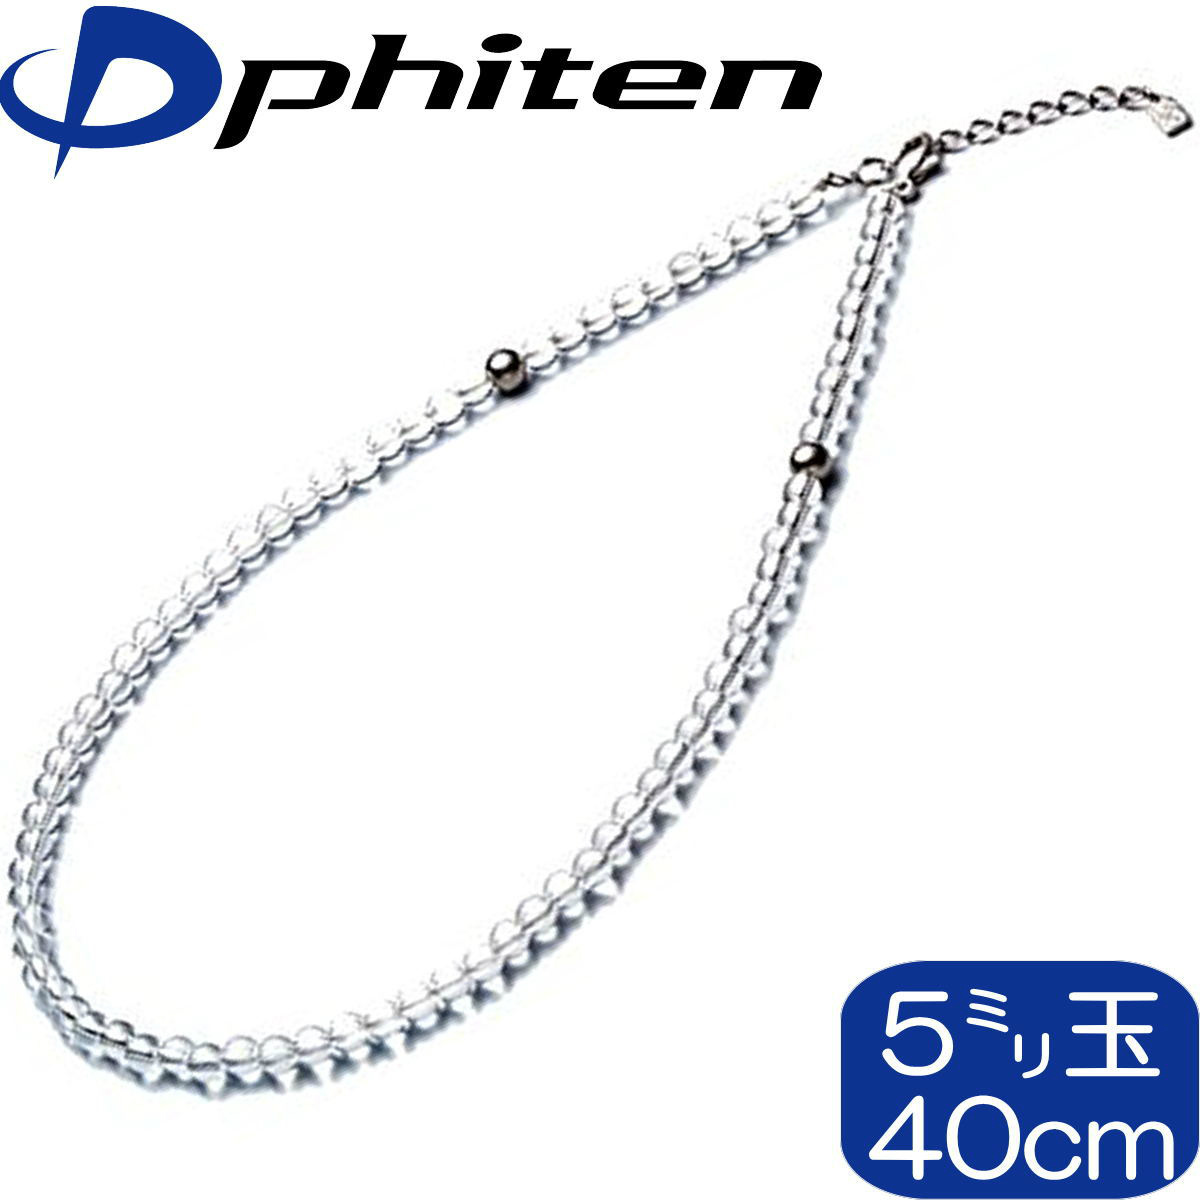 留め具はアジャスター付き 最大5cmの延長が可能 Phiten 水晶ネックレス +5cmアジャスター 日本製 5mm玉 若者の大愛商品 ファイテン 40cm 0515AQ808051 都内で